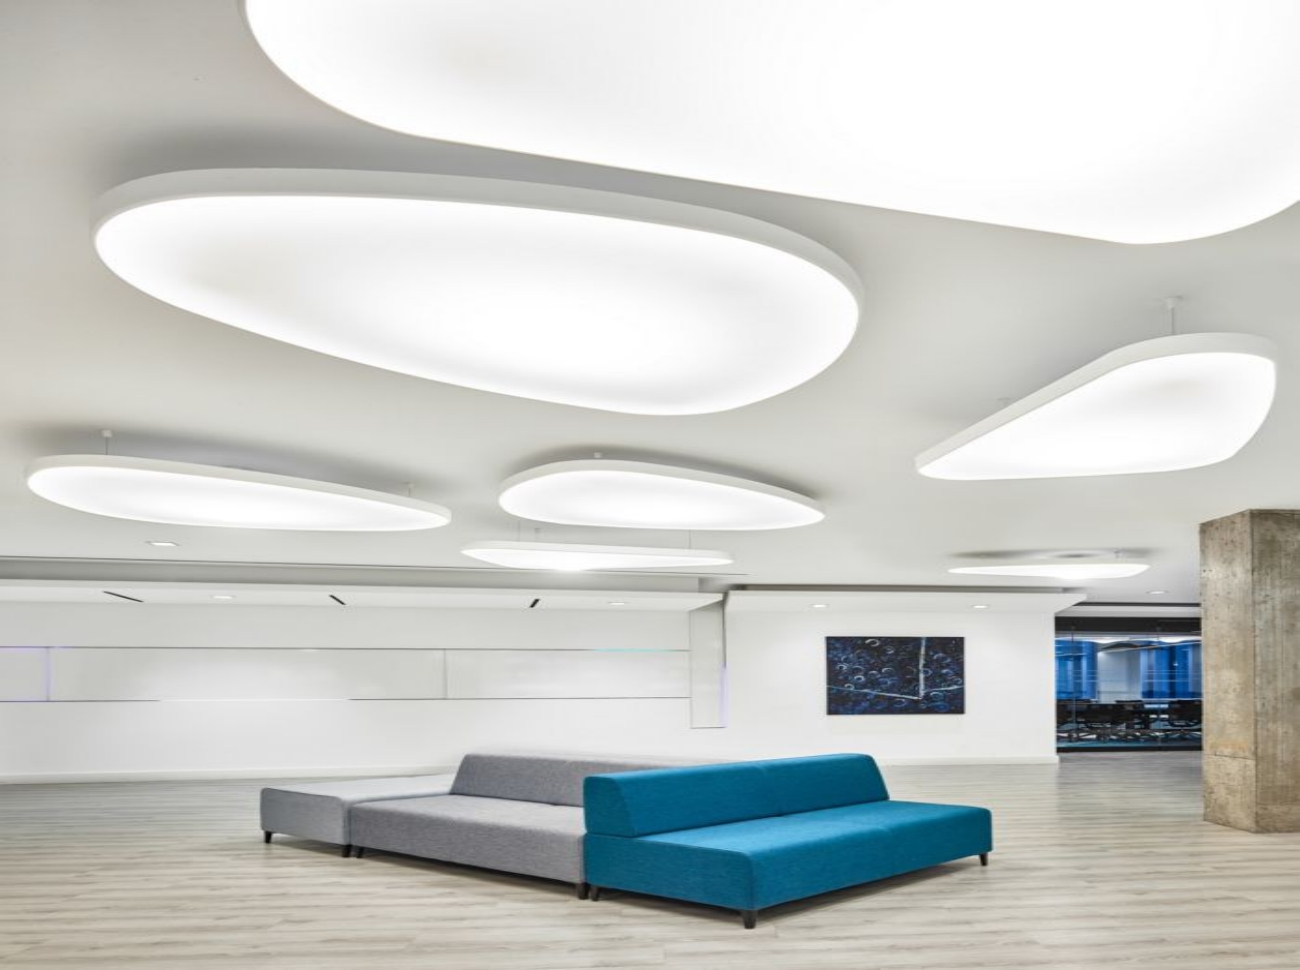 Panneaux de plafonniers LED : une solution d'éclairage durable-Guide--Wildeboer Dellelce Offices by SGH Design Partners 副本